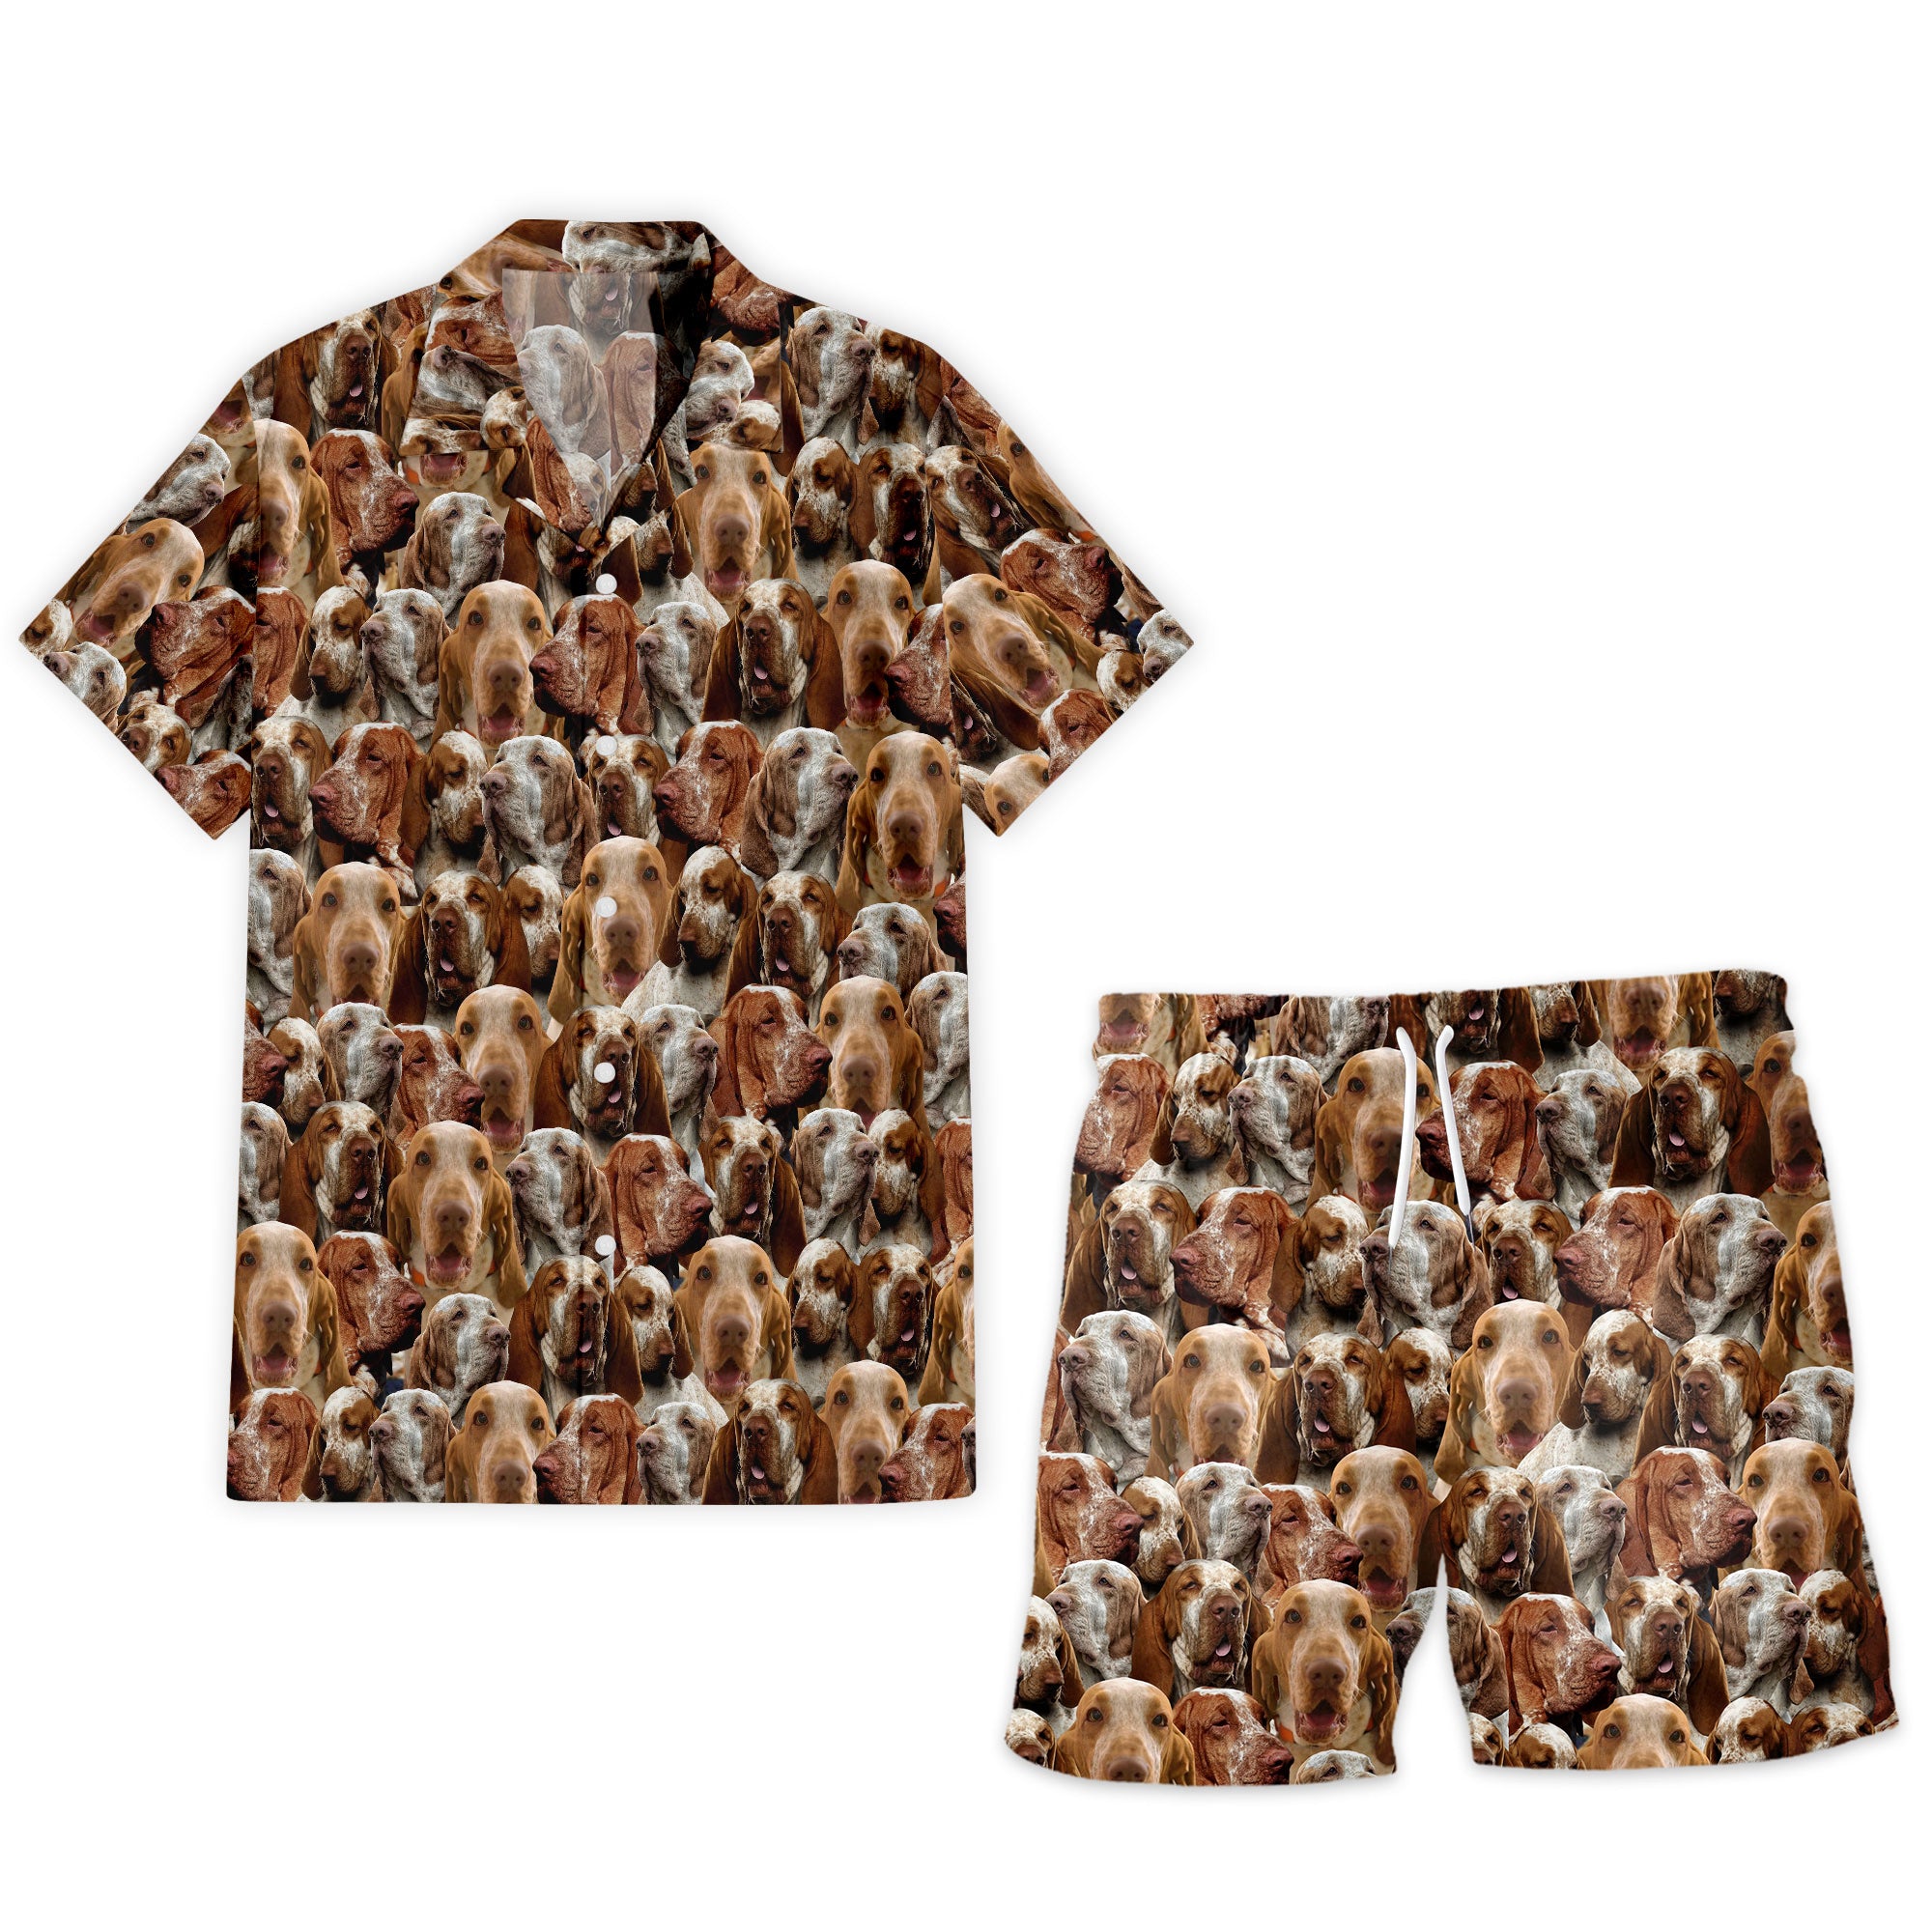 Bracco Italiano Full Face Hawaiian Shirt & Shorts